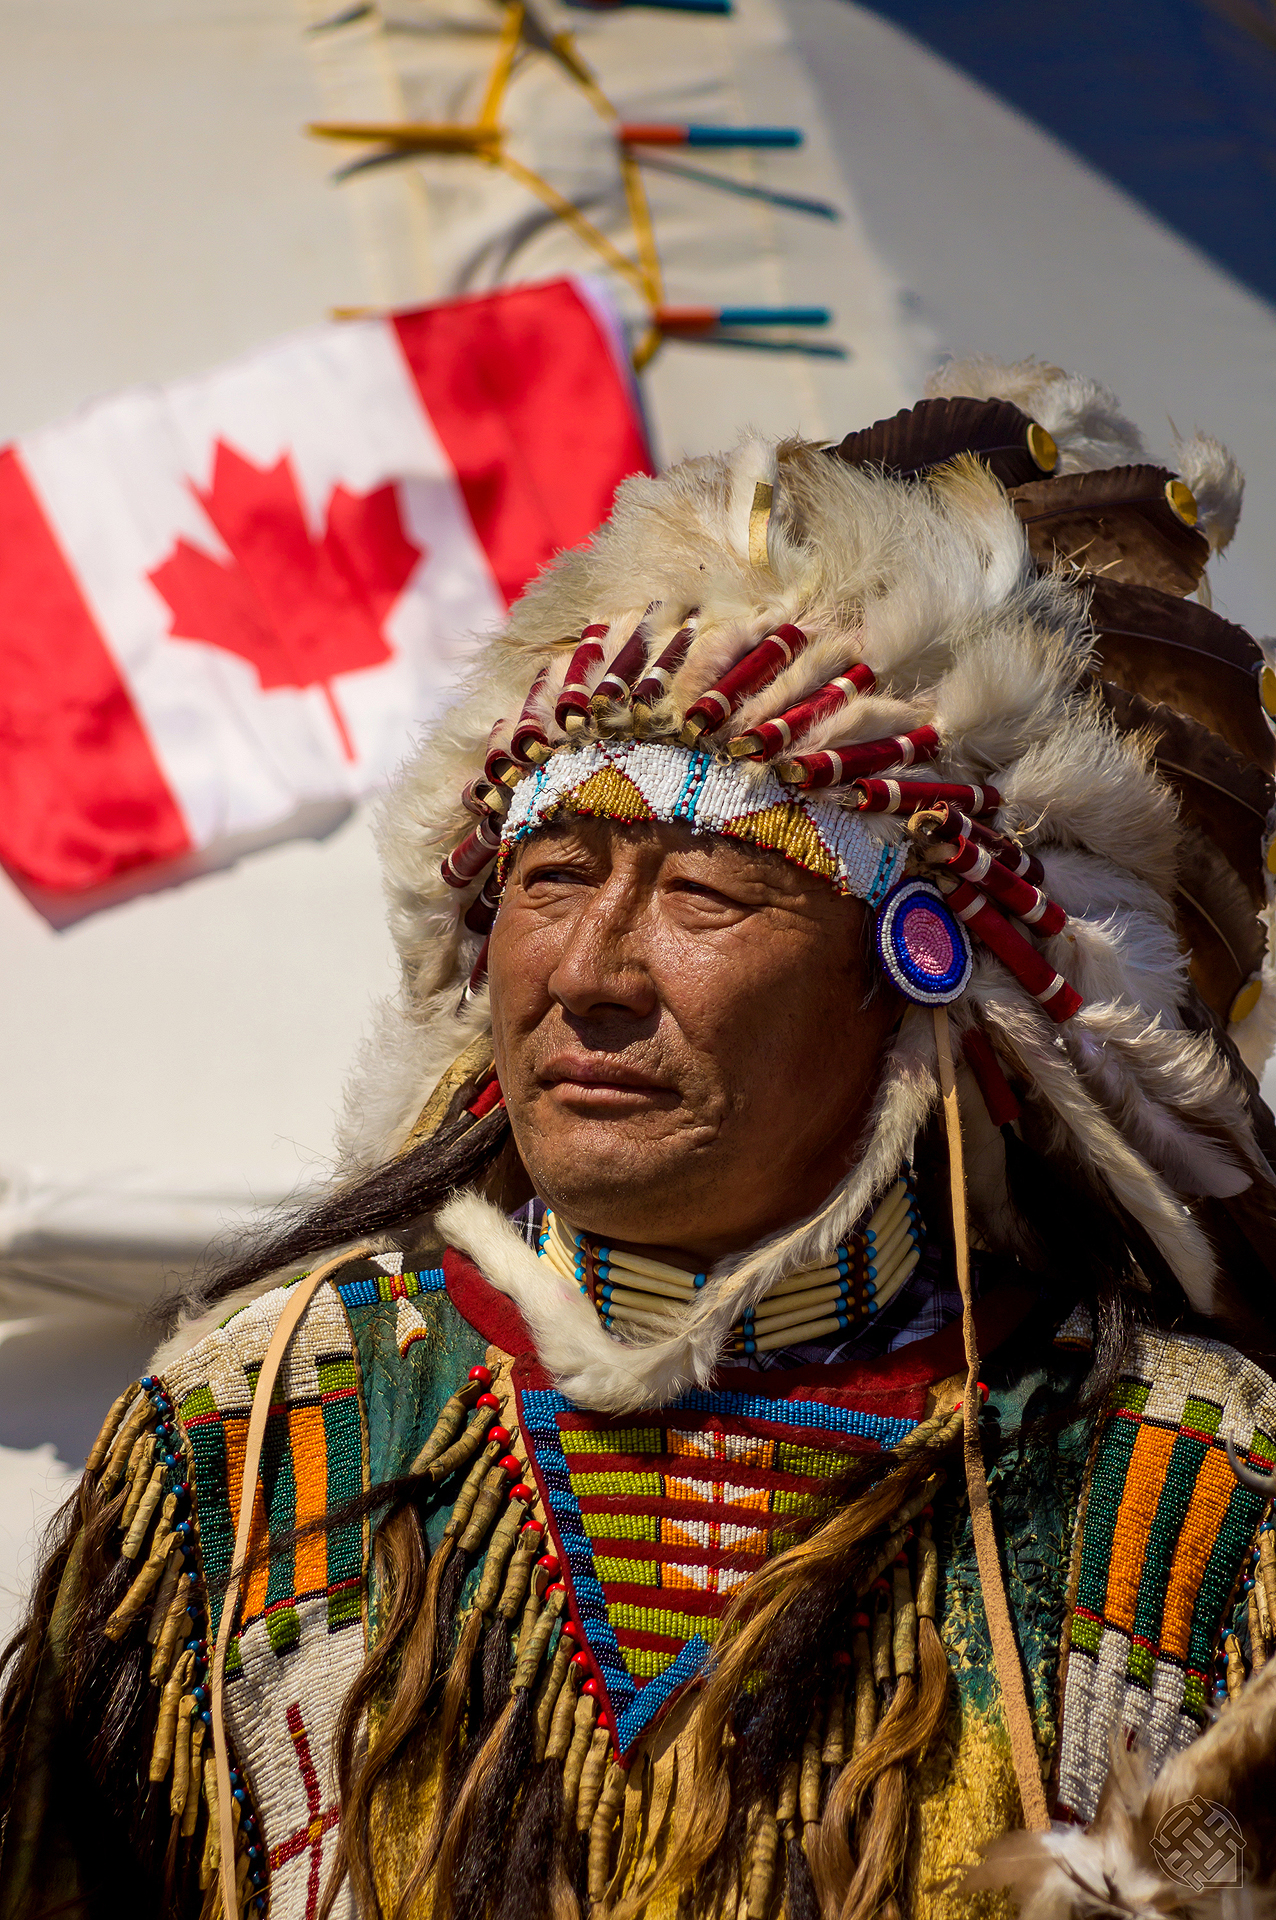 Коренное население северной америки эскимосы и индейцы. Могикане индейцы Северной Америки. Индейцы Канады народы Канады. Индейцы Северной Америки оджибве. Коренное население Канады индейцы и Эскимосы.